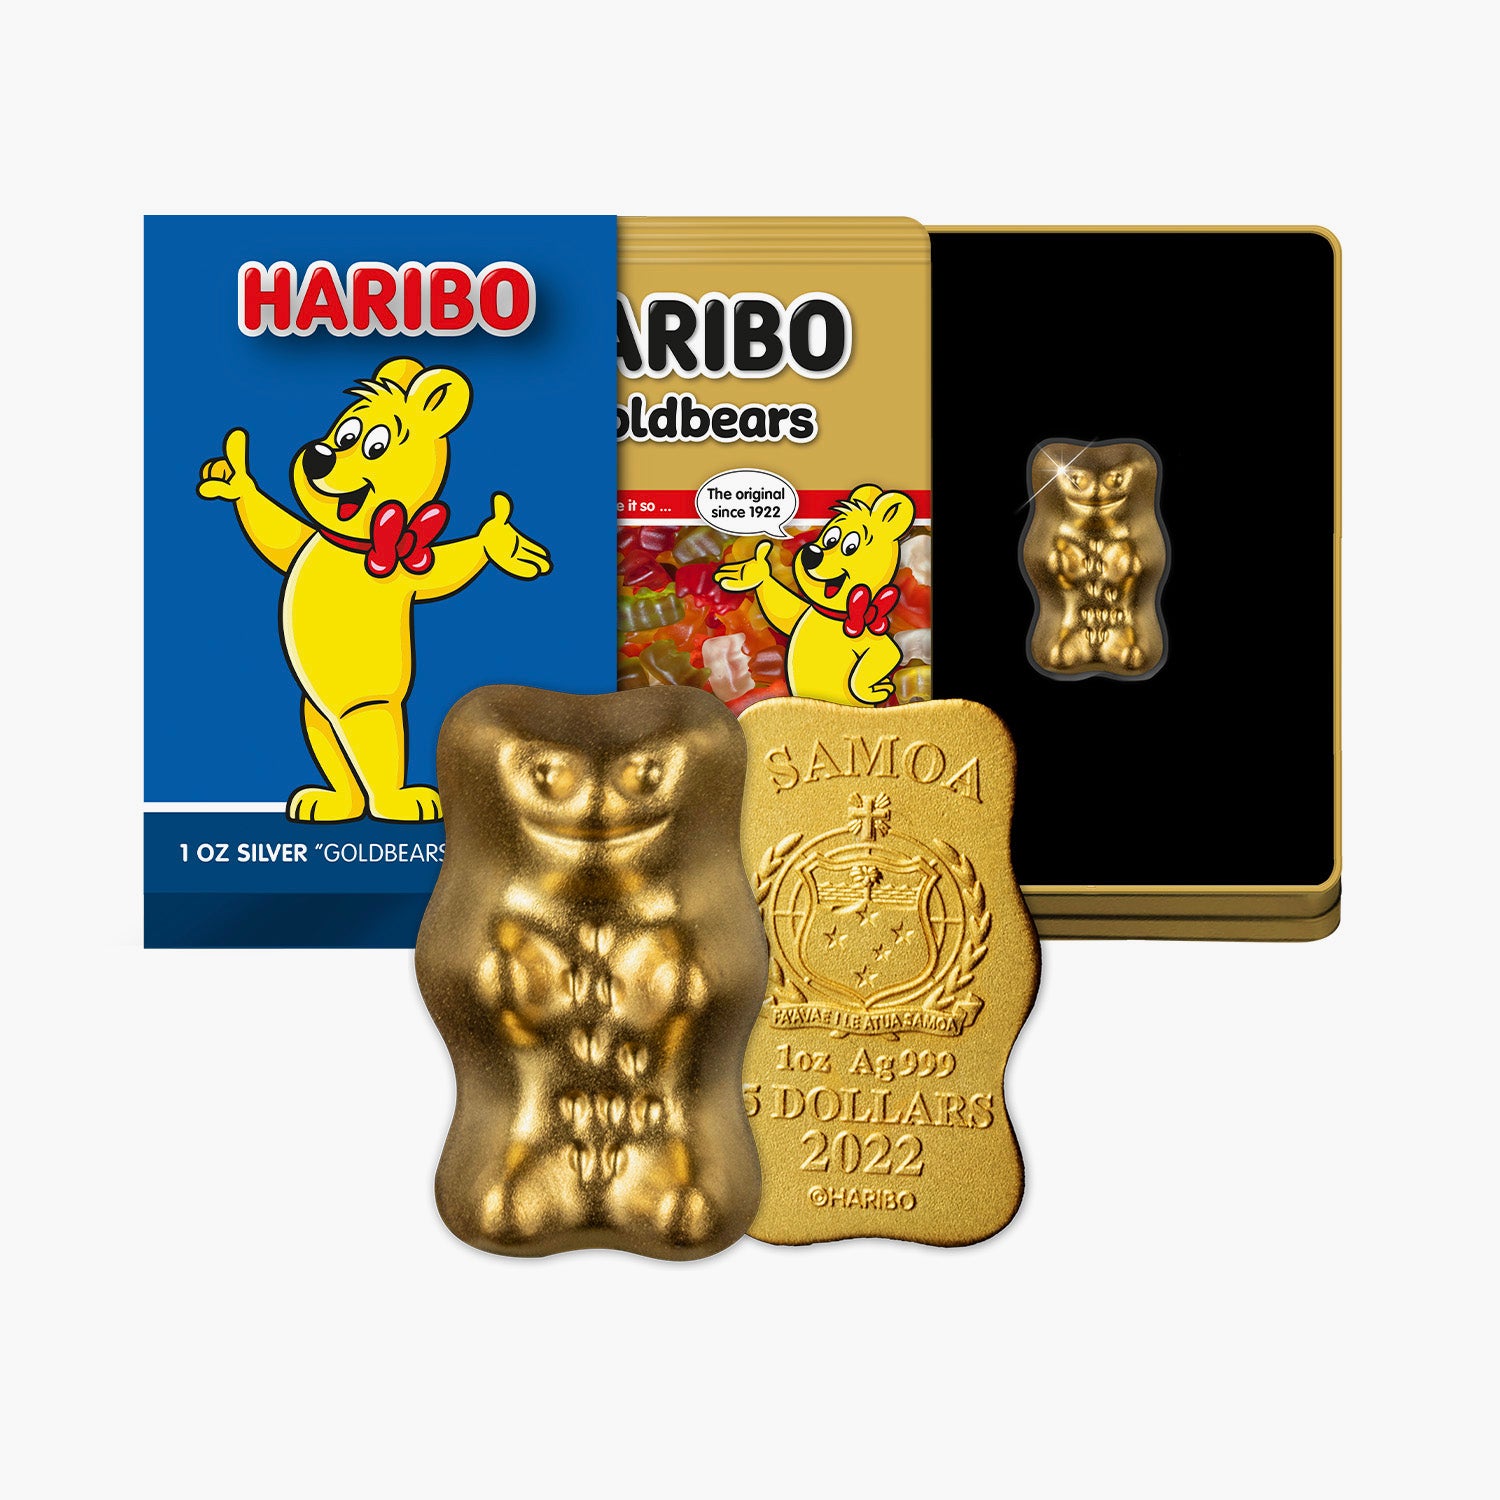 Haribo Gold Bear 1oz Silver Coin